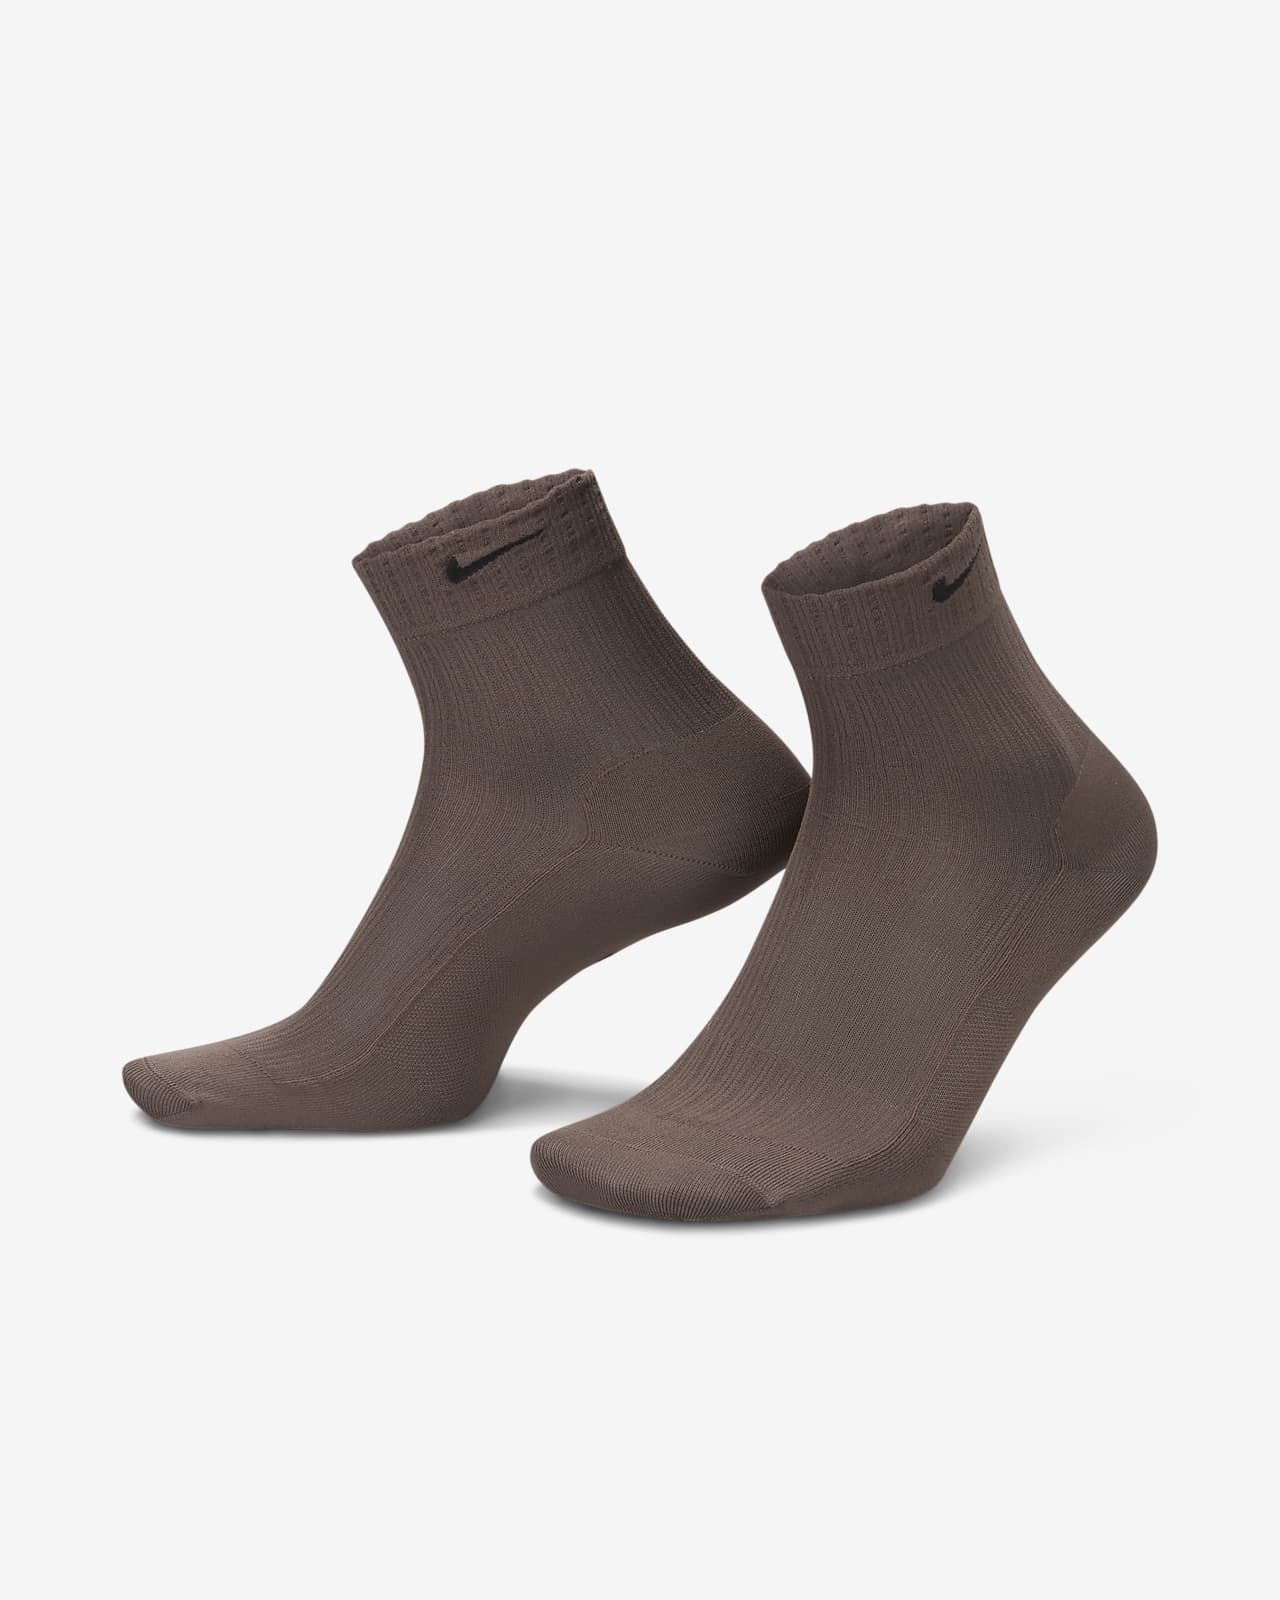 Socquettes transparentes Nike pour femme (1 paire)